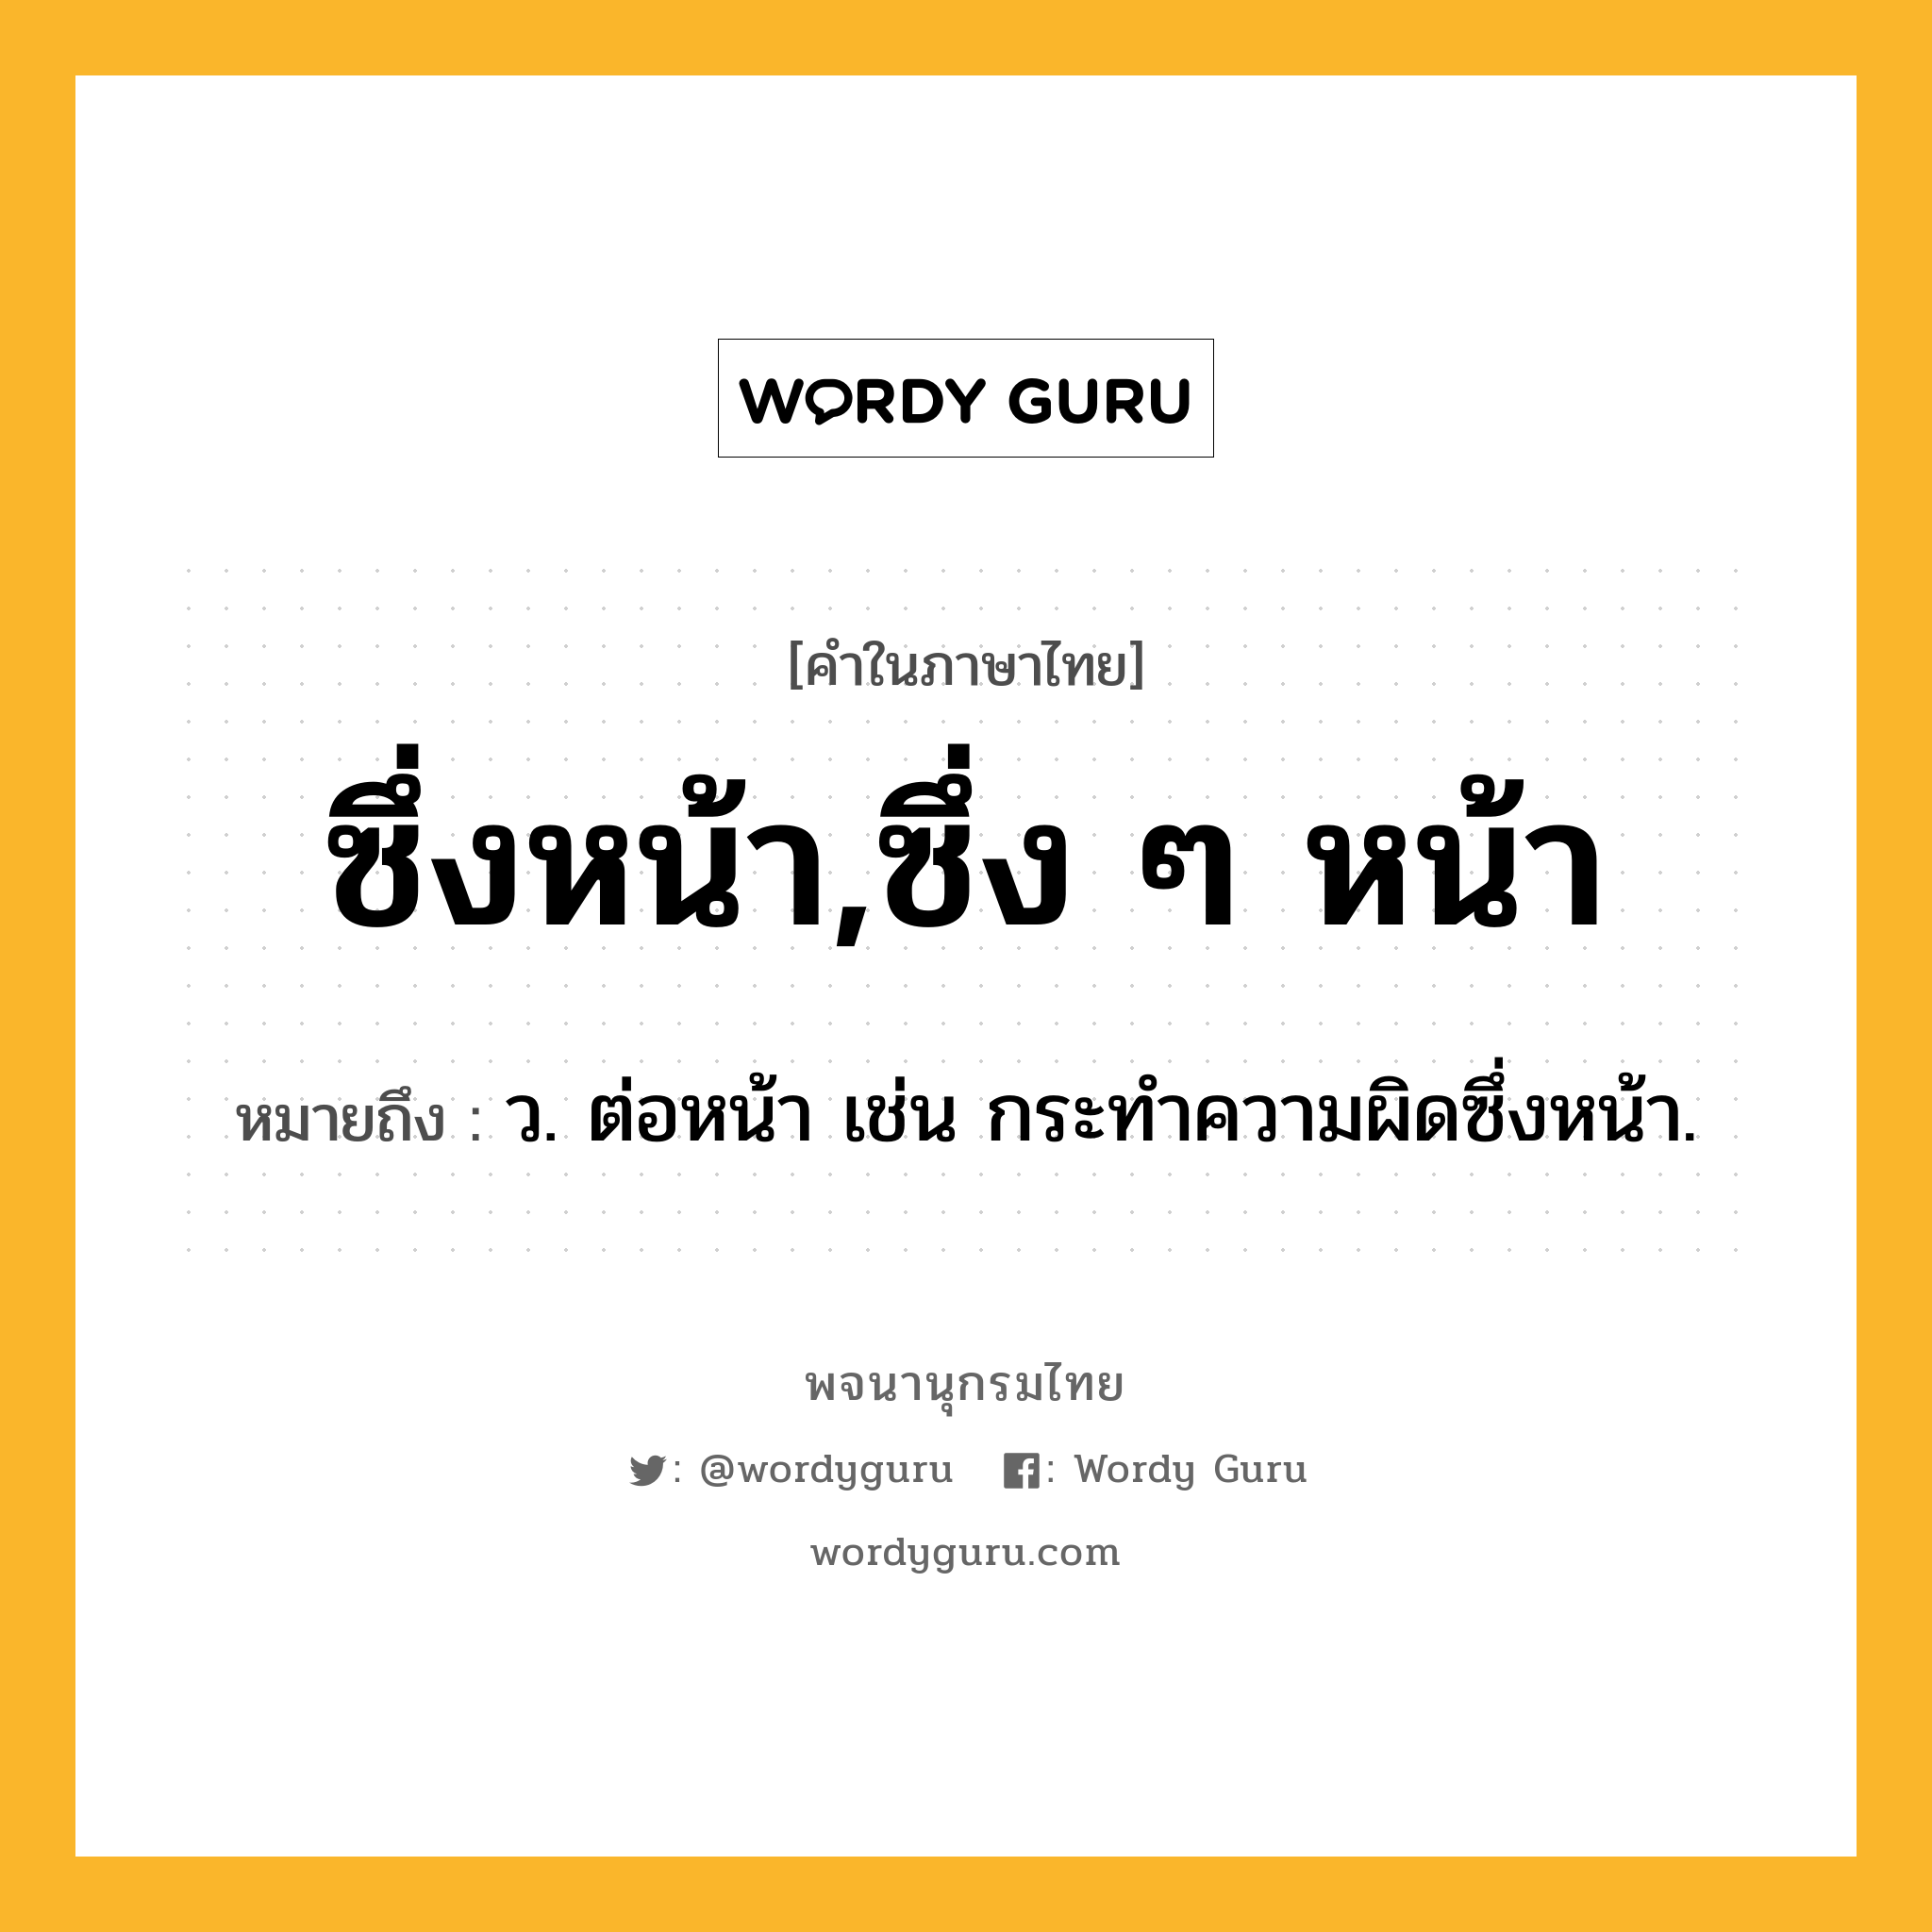 ซึ่งหน้า,ซึ่ง ๆ หน้า หมายถึงอะไร?, คำในภาษาไทย ซึ่งหน้า,ซึ่ง ๆ หน้า หมายถึง ว. ต่อหน้า เช่น กระทําความผิดซึ่งหน้า.